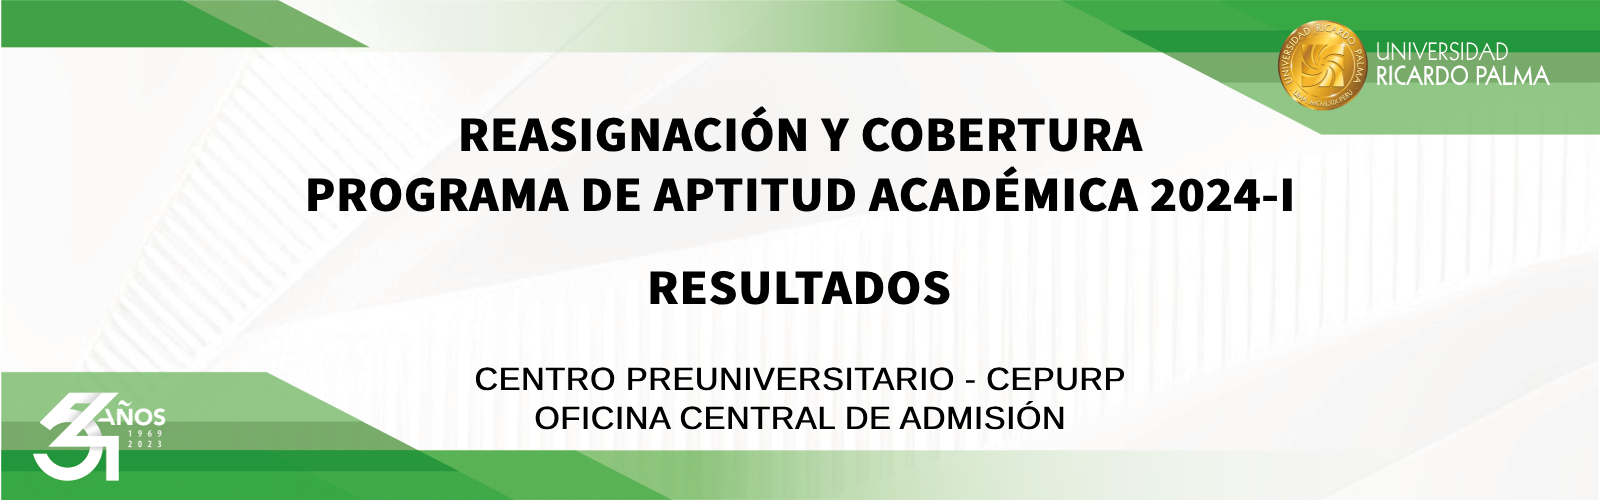 RESULTADOS REASIGNACIÓN Y COBERTURA - PROGRAMA DE APTITUD ACADÉMICA 2024-I